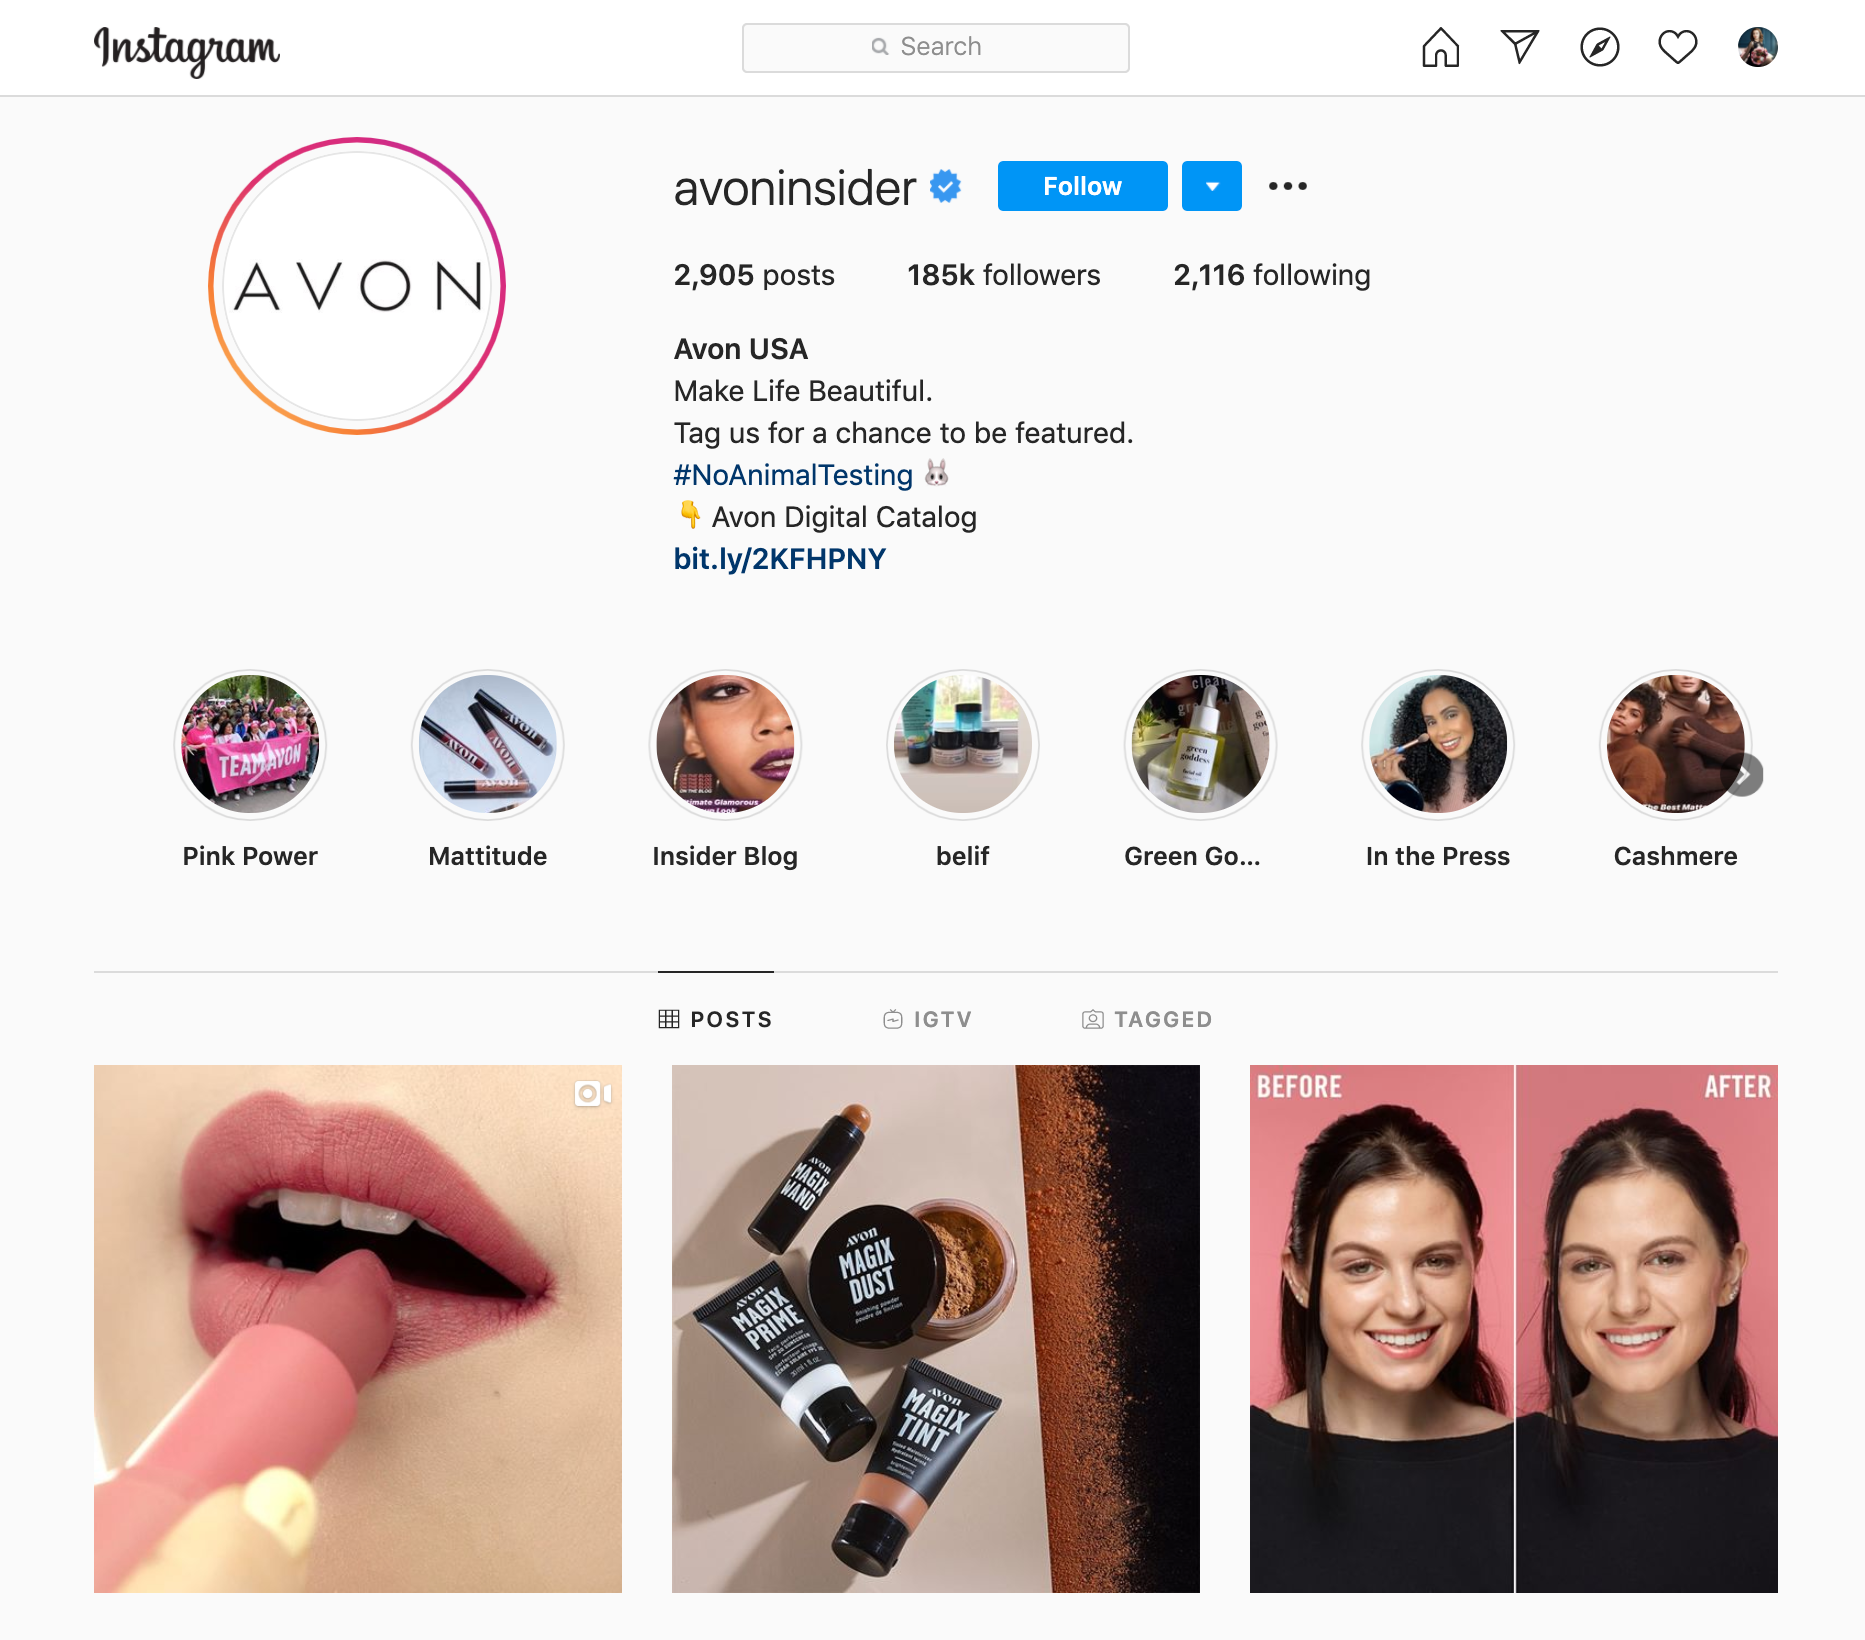 Avon page in Instagram